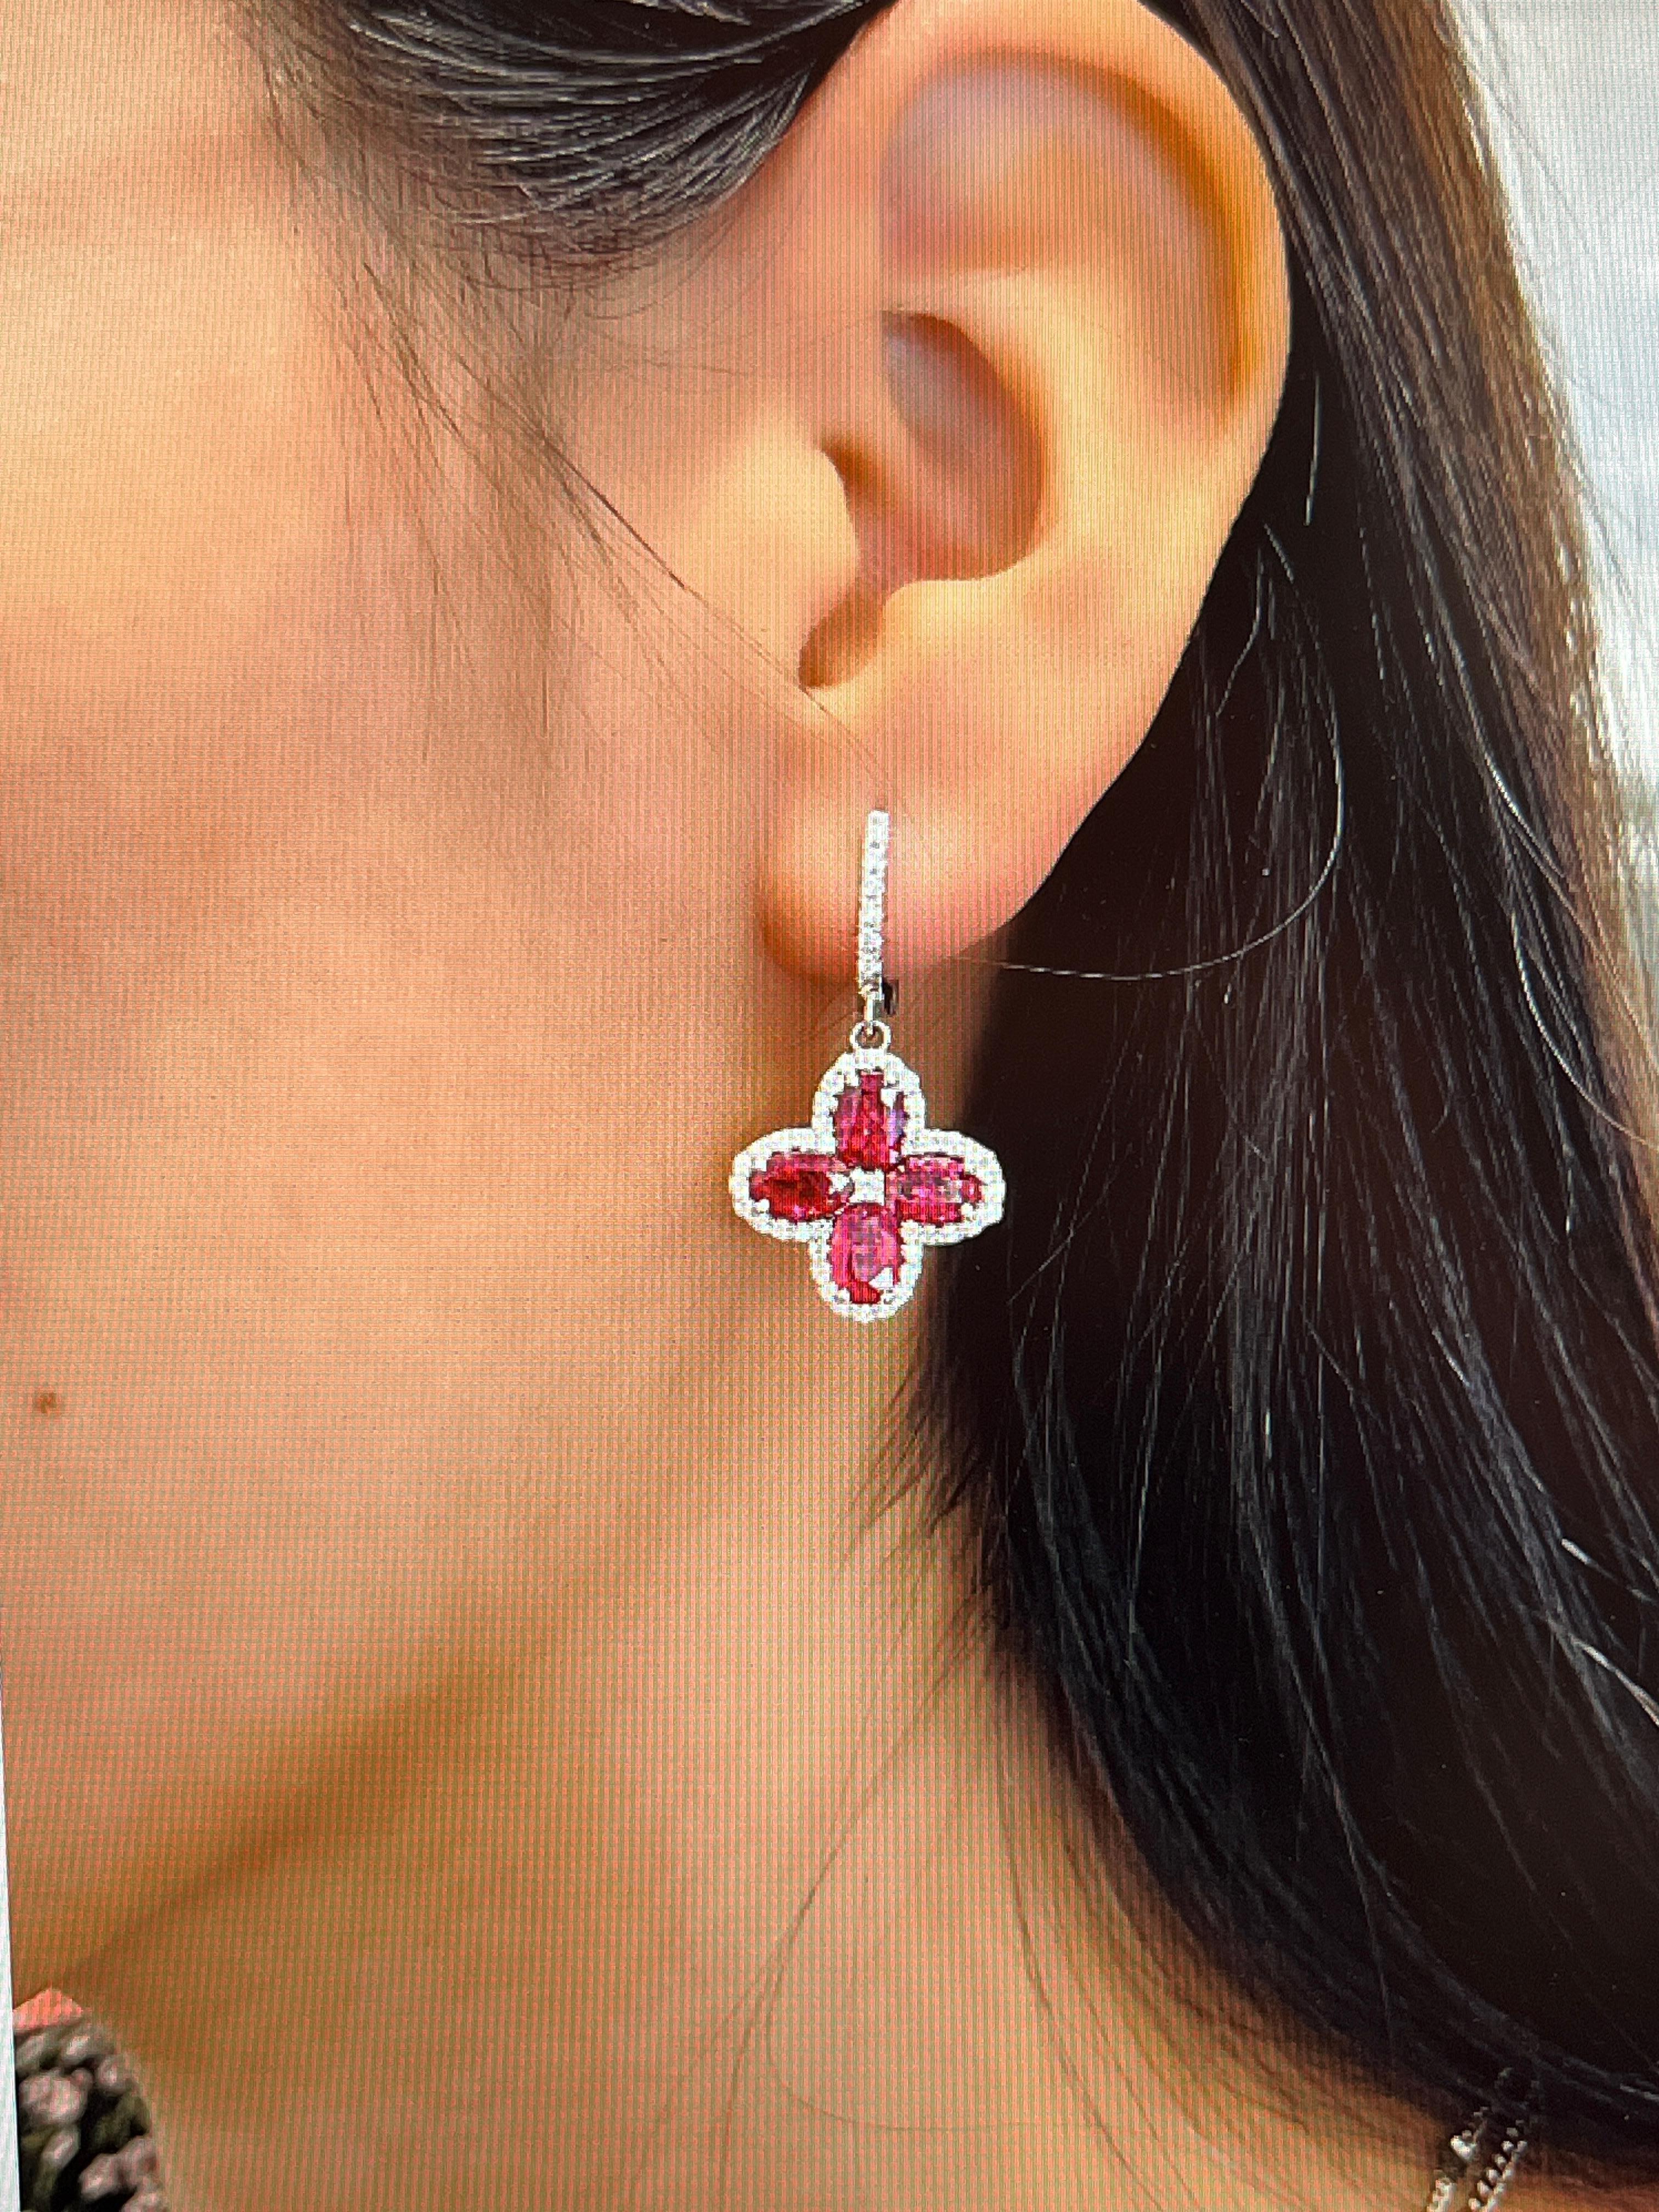 Ces magnifiques boucles d'oreilles en rubis de Birmanie et diamants de 6,87 ctw présentent 8 rubis de forme ovale pesant 6,01 ct entourés de 94 diamants pesant 0,86 ct sertis dans de l'or blanc 18k. Les diamants sont de couleur E/F et de pureté